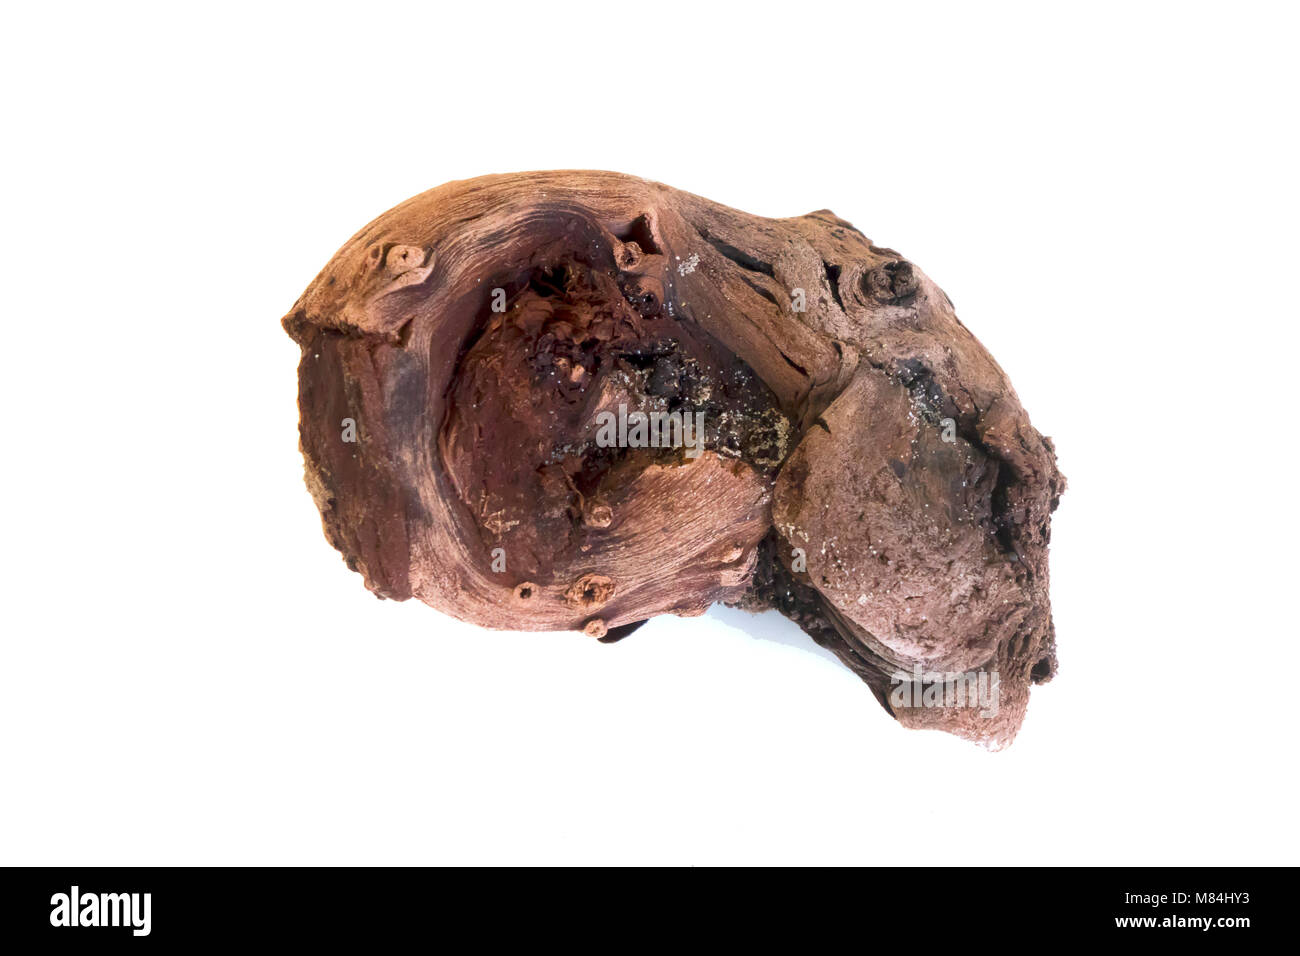 Un échantillon d'un morceau de bois fossile provenant d'arbres datant de la dernière époque glaciaire il y a 4000 ans trouvés sur la plage de Redcar Banque D'Images